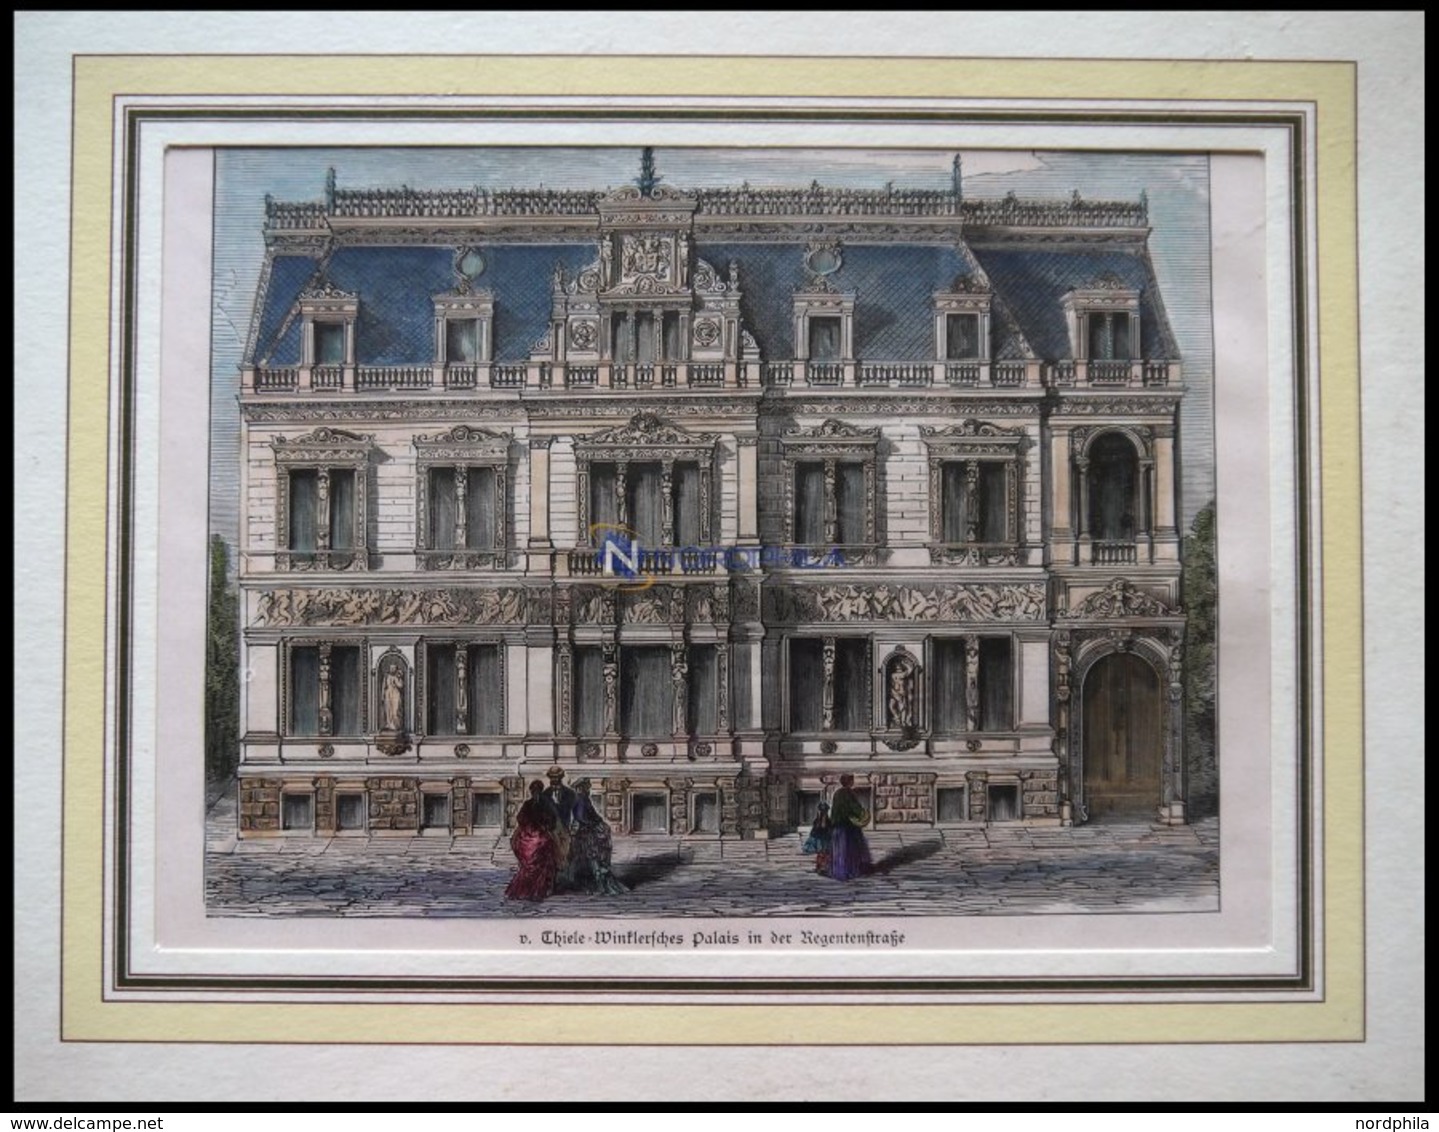 BERLIN: V.Thiele-Winklersches Palais In Der Regentstraße, Kolorierter Holzstich Um 1880 - Lithographies